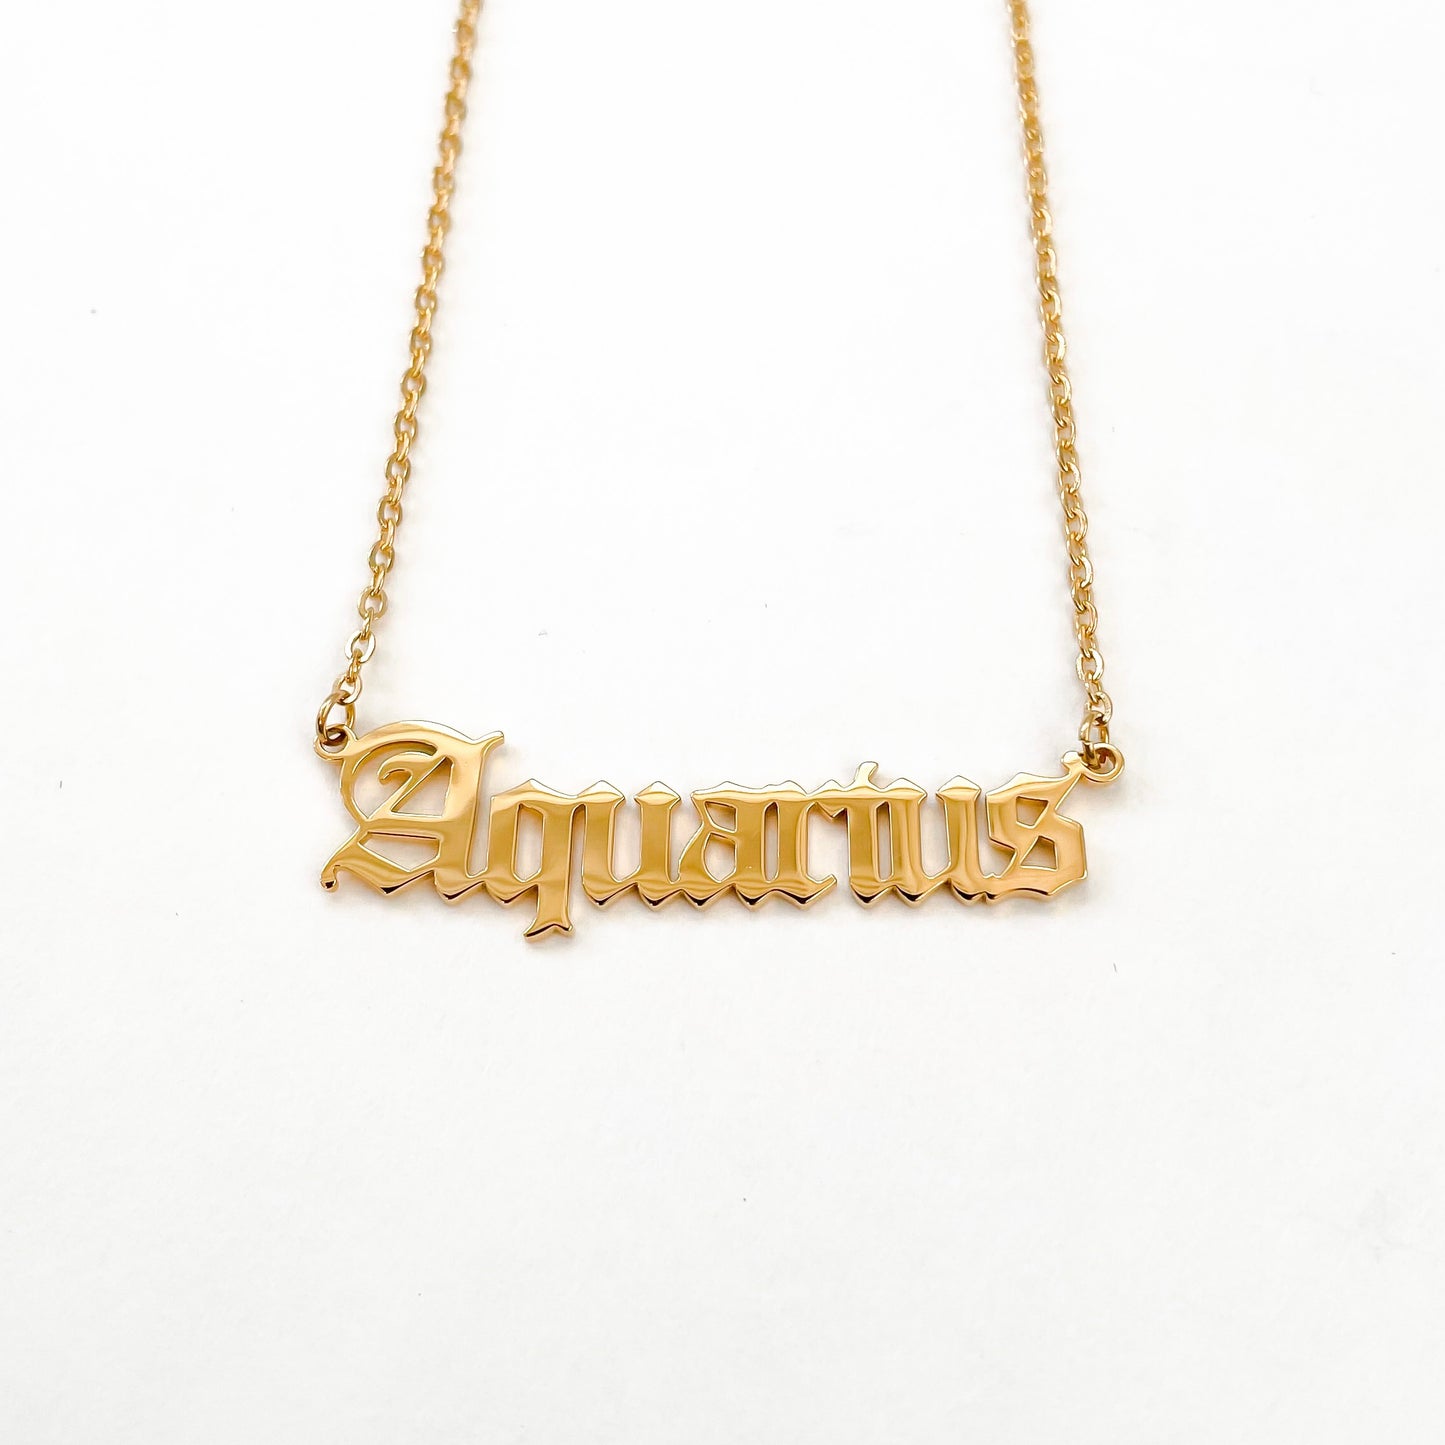 Aquarius Necklace in Gold